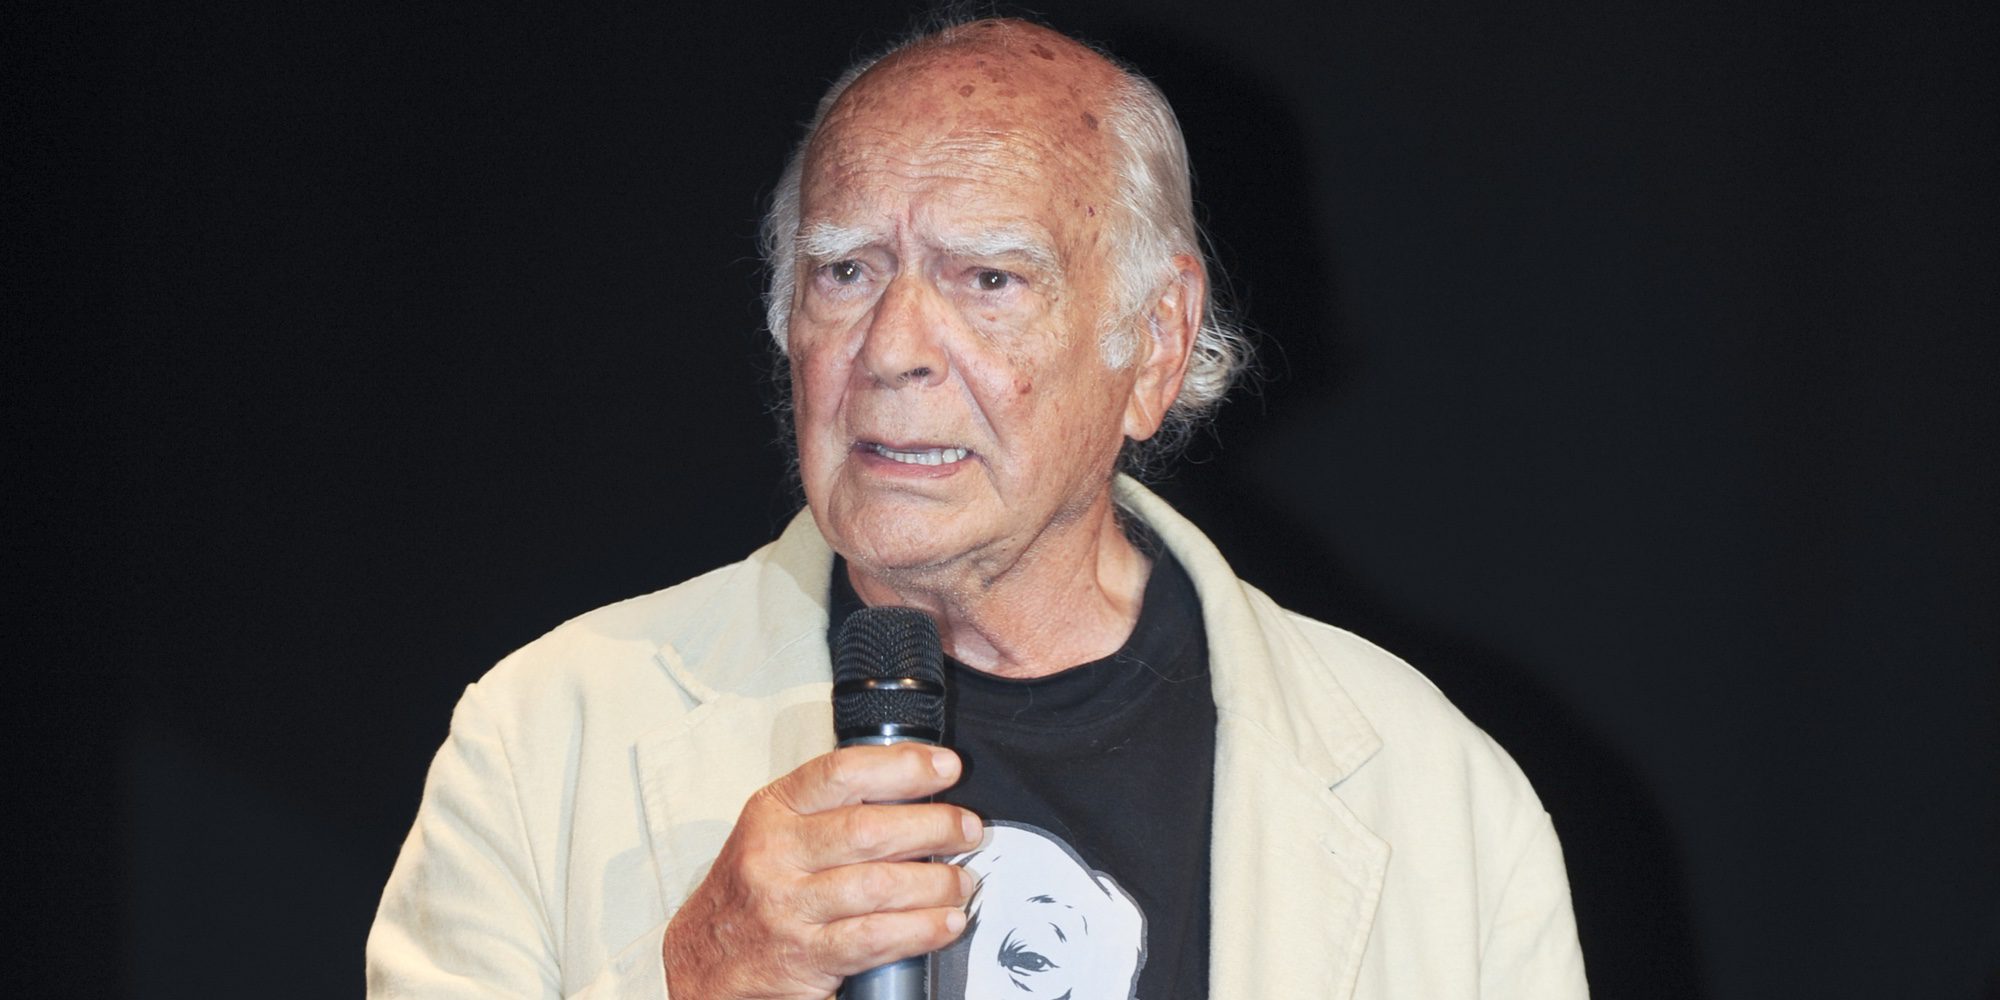 Muere el director español Antonio Isasi-Isasmendi a los 90 años